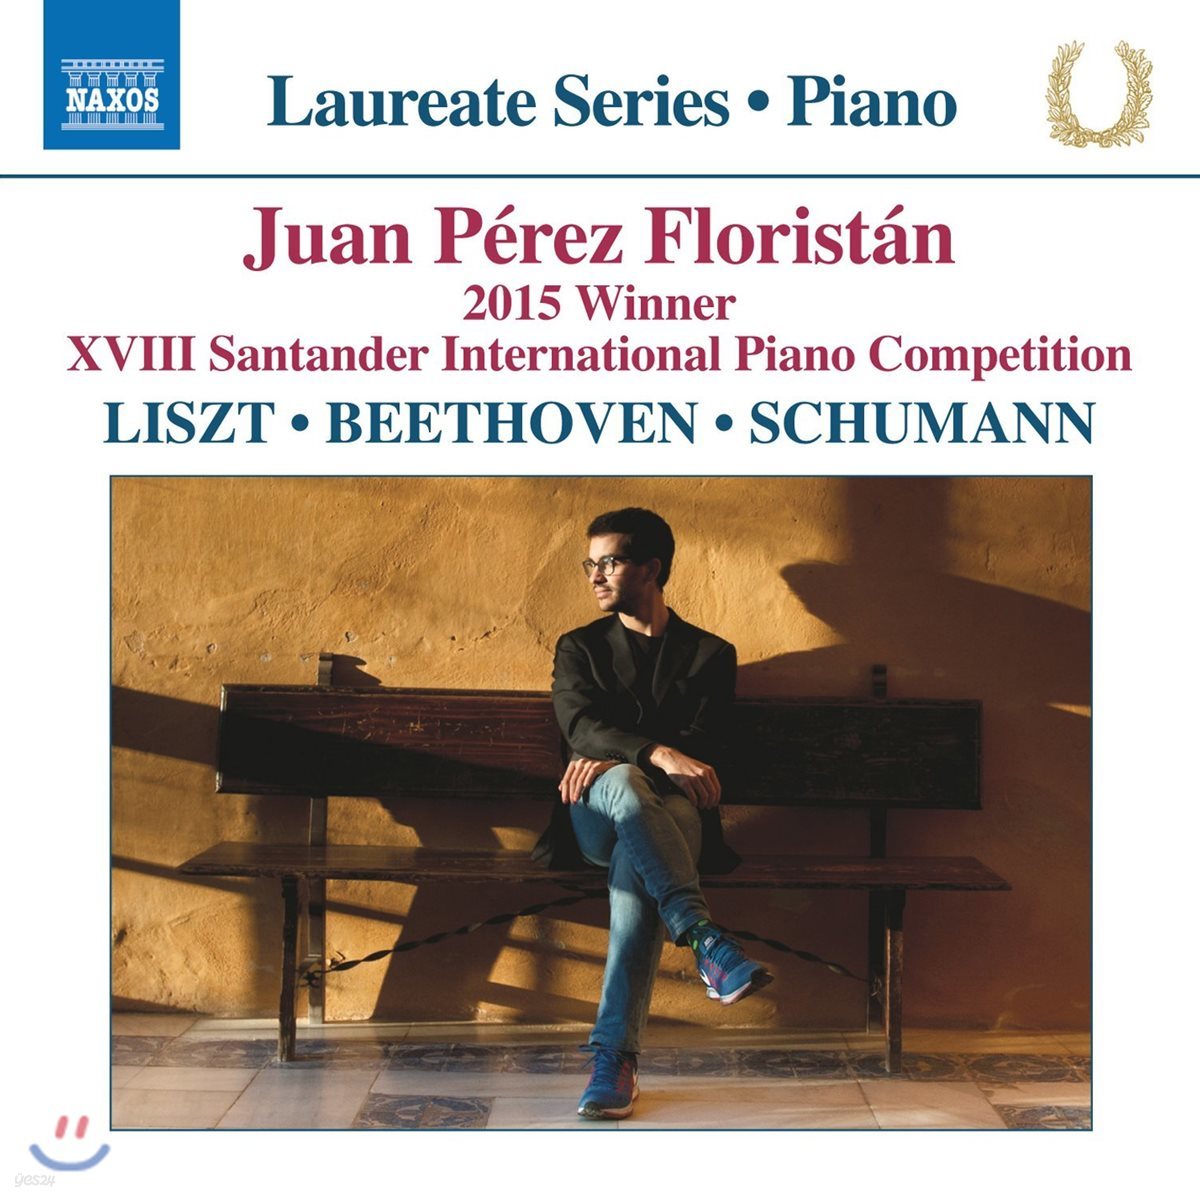 Juan Perez Floristan 후안 페레즈 플로리스탄 - 피아노 리사이틀: 리스트 / 베토벤 / 슈만 (Piano Recital)